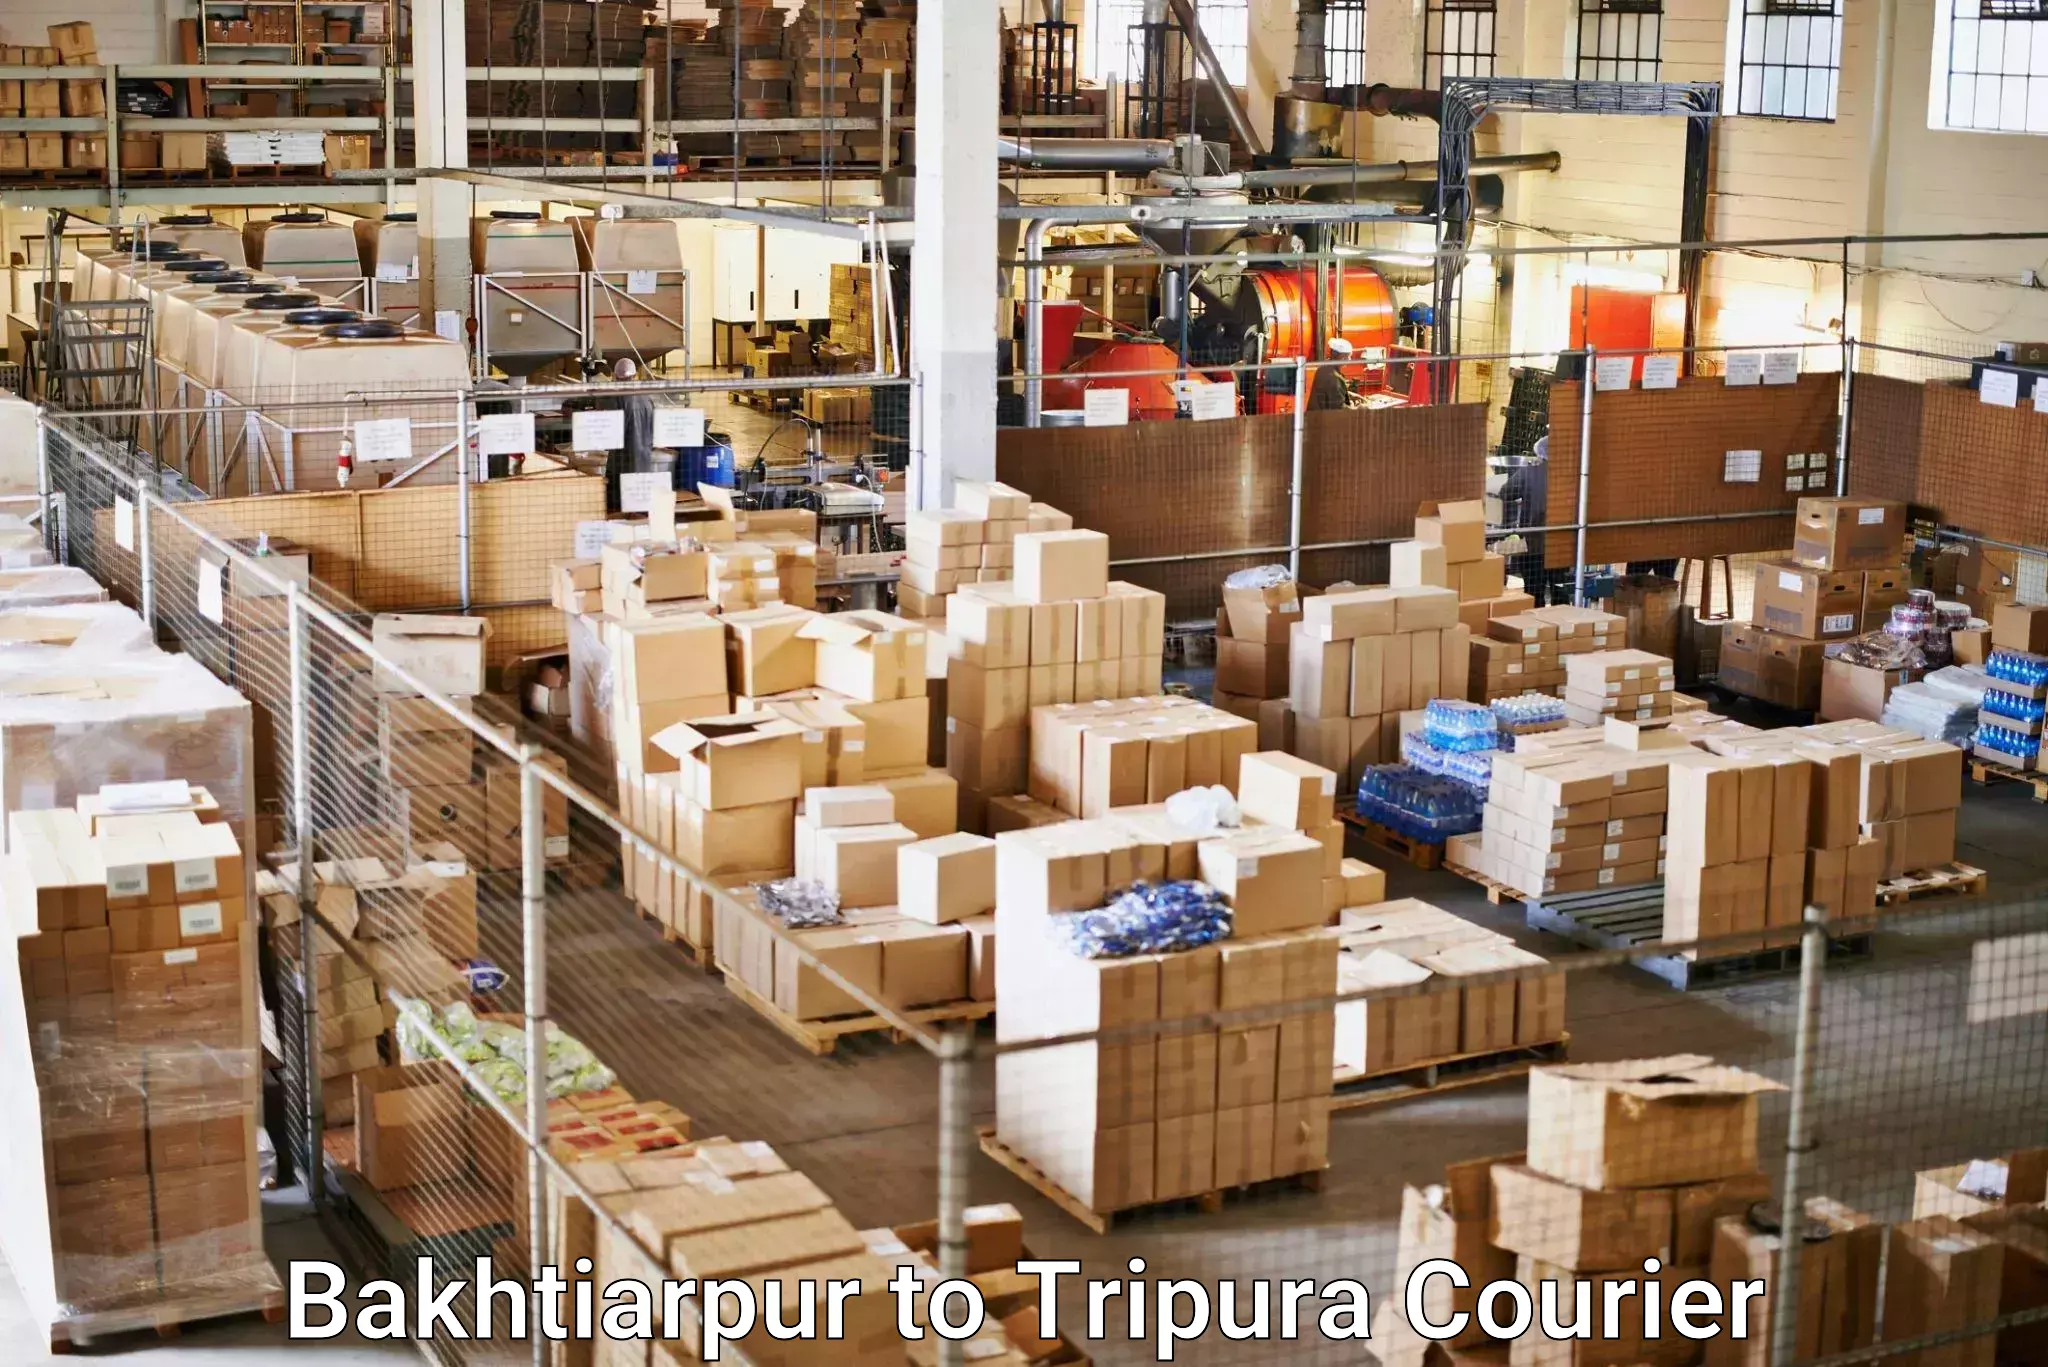 Advanced shipping services Bakhtiarpur to Agartala